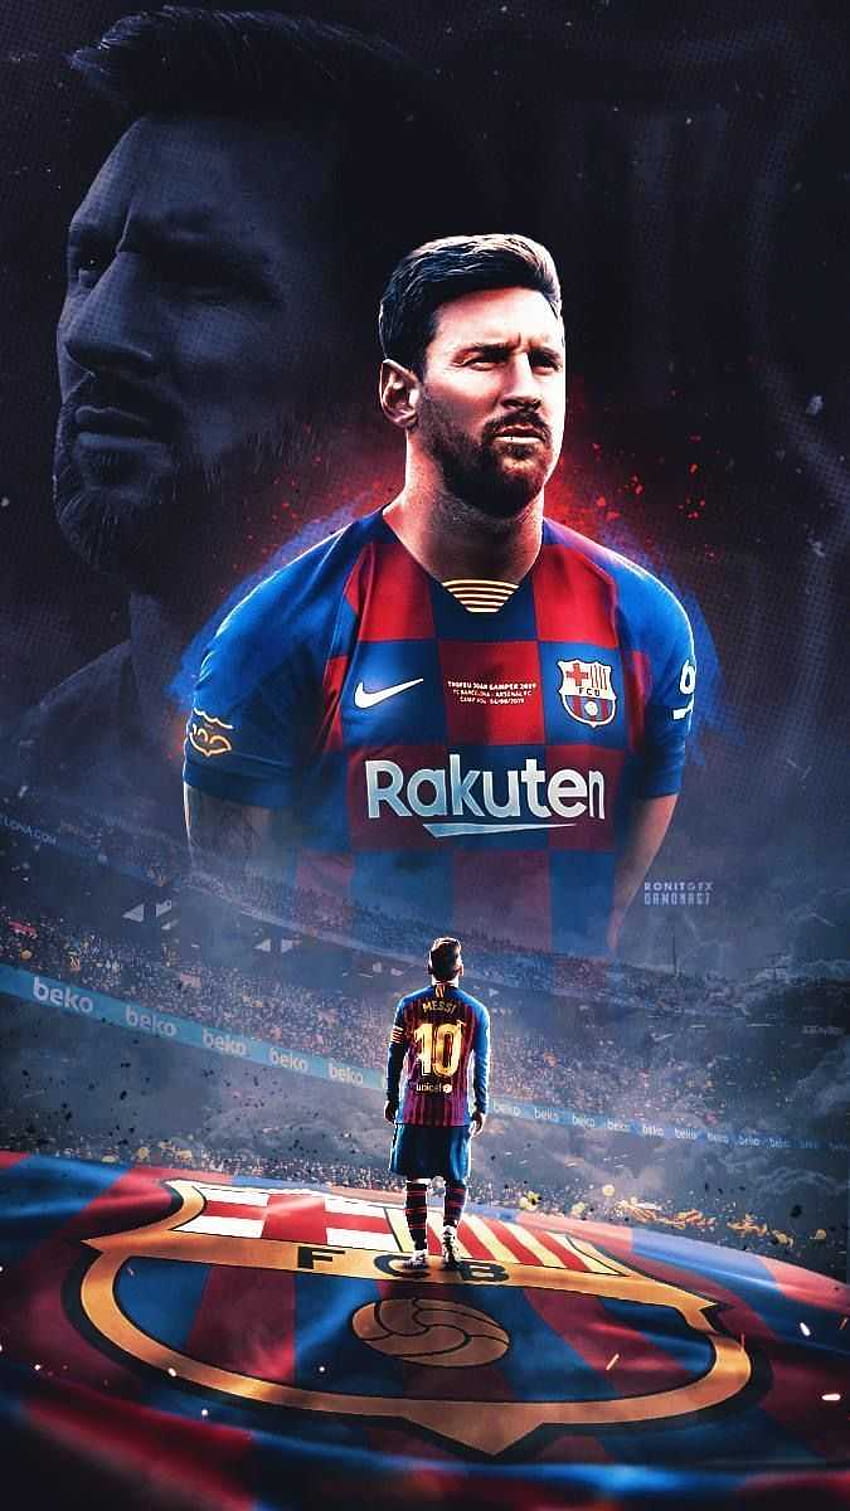 Lionel Messi, messi sign HD phone wallpaper | Pxfuel: Người hâm mộ Messi đâu rồi? Hình nền cho điện thoại của bạn sẽ trở nên phong cách hơn bao giờ hết với hình ảnh của chính ngôi sao bóng đá Lionel Messi. Tải về và cài đặt ngay để đưa sự nổi tiếng của Messi đến với màn hình điện thoại của bạn.